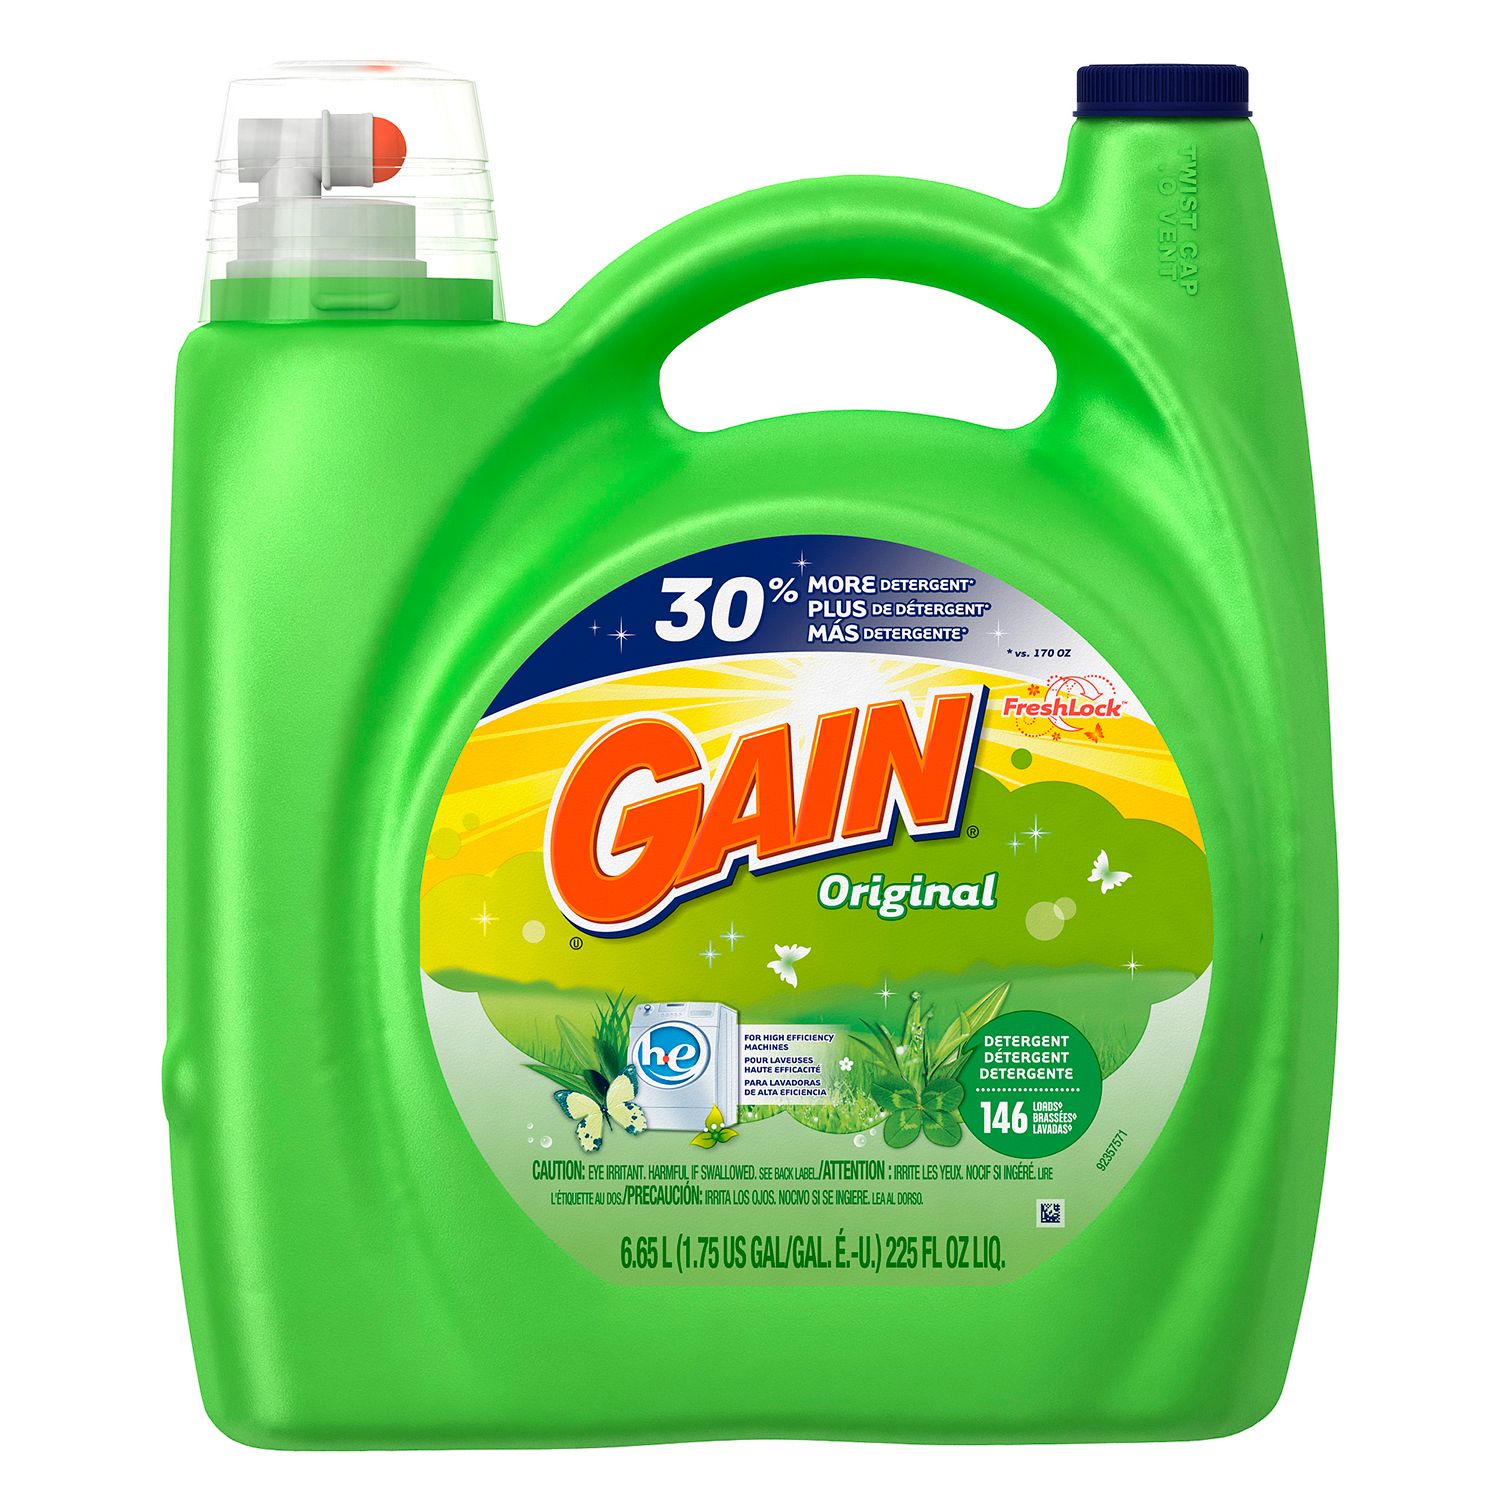 Gain HE Original Liquid Laundry Detergent - 225 oz. -